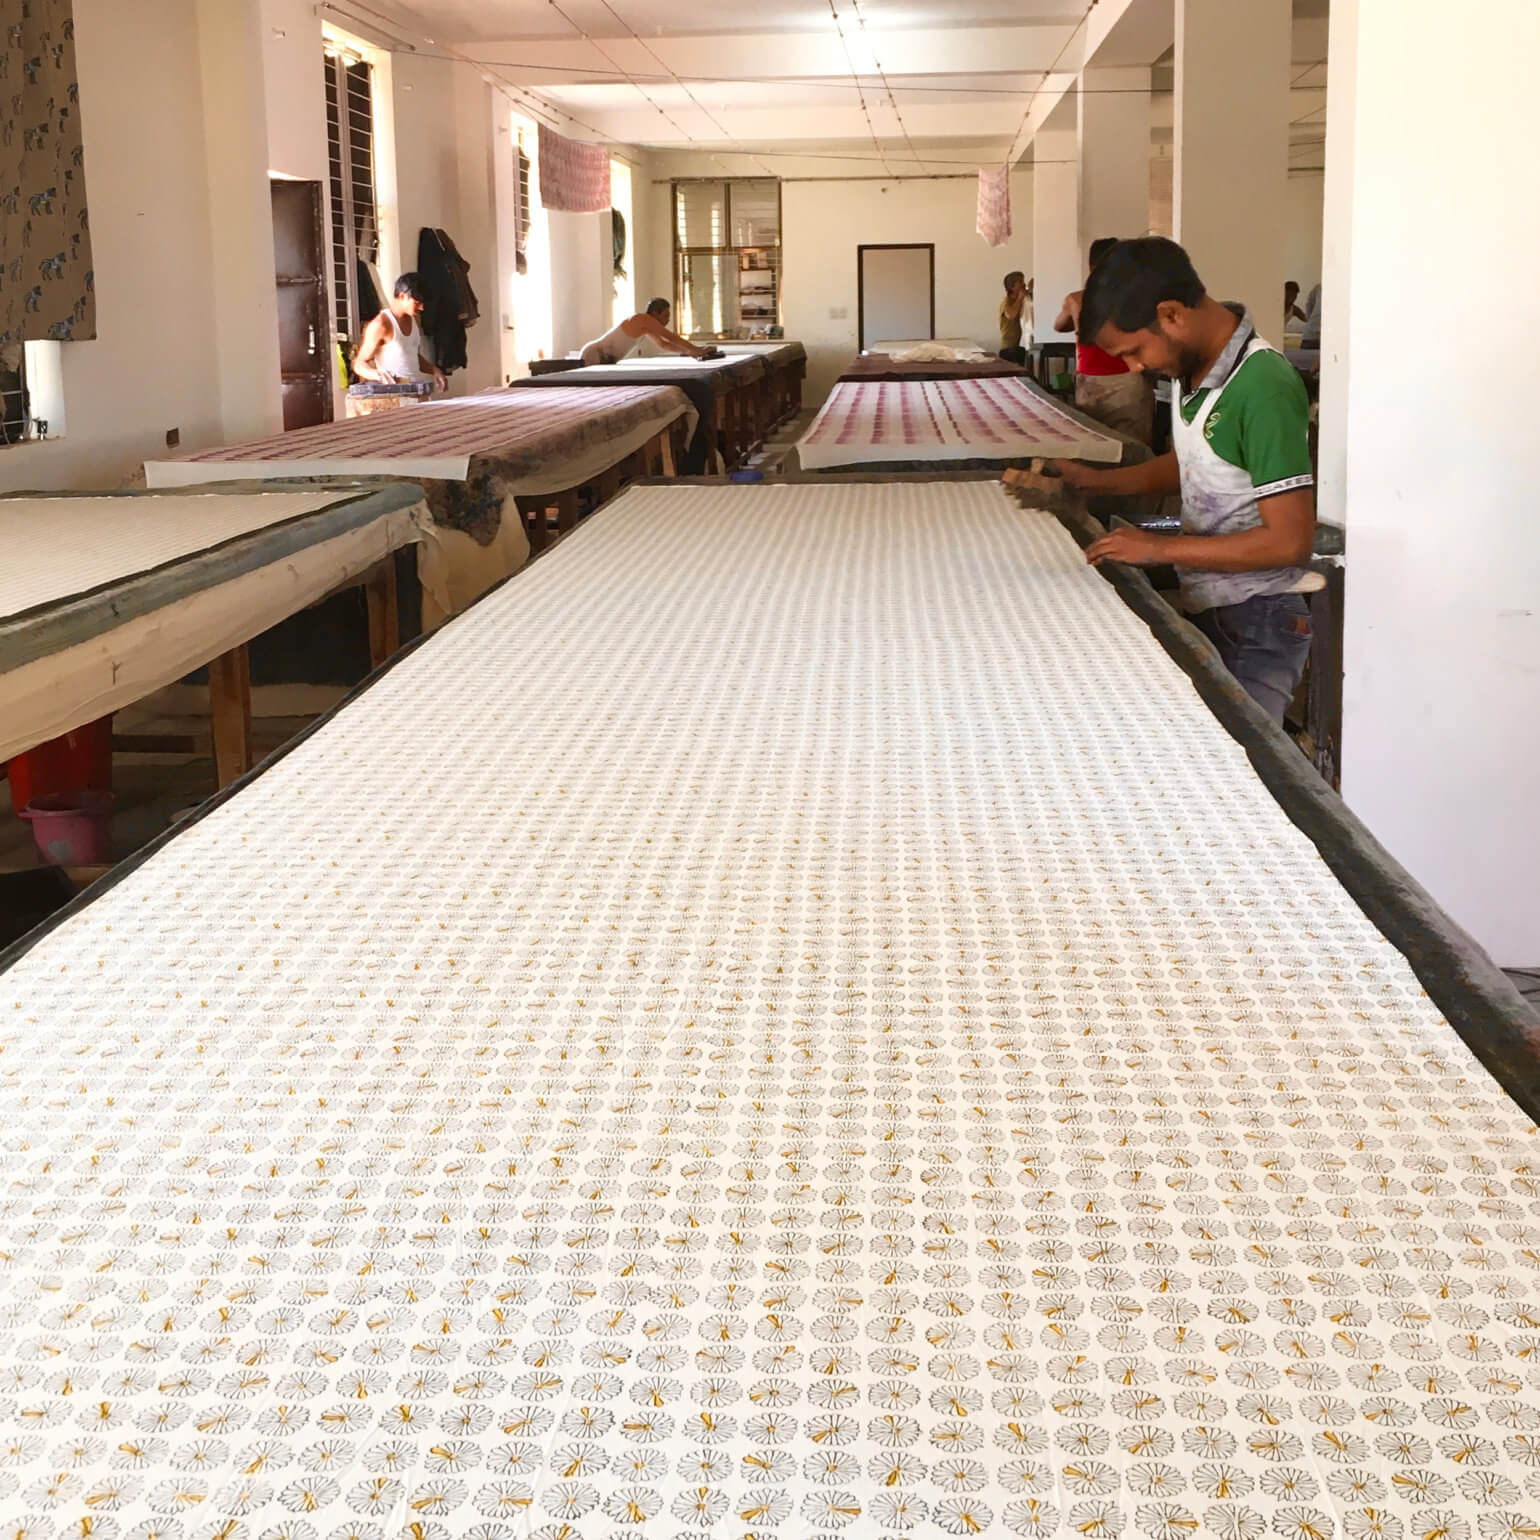 インドの木版プリント工房で職人たちが作業する様子